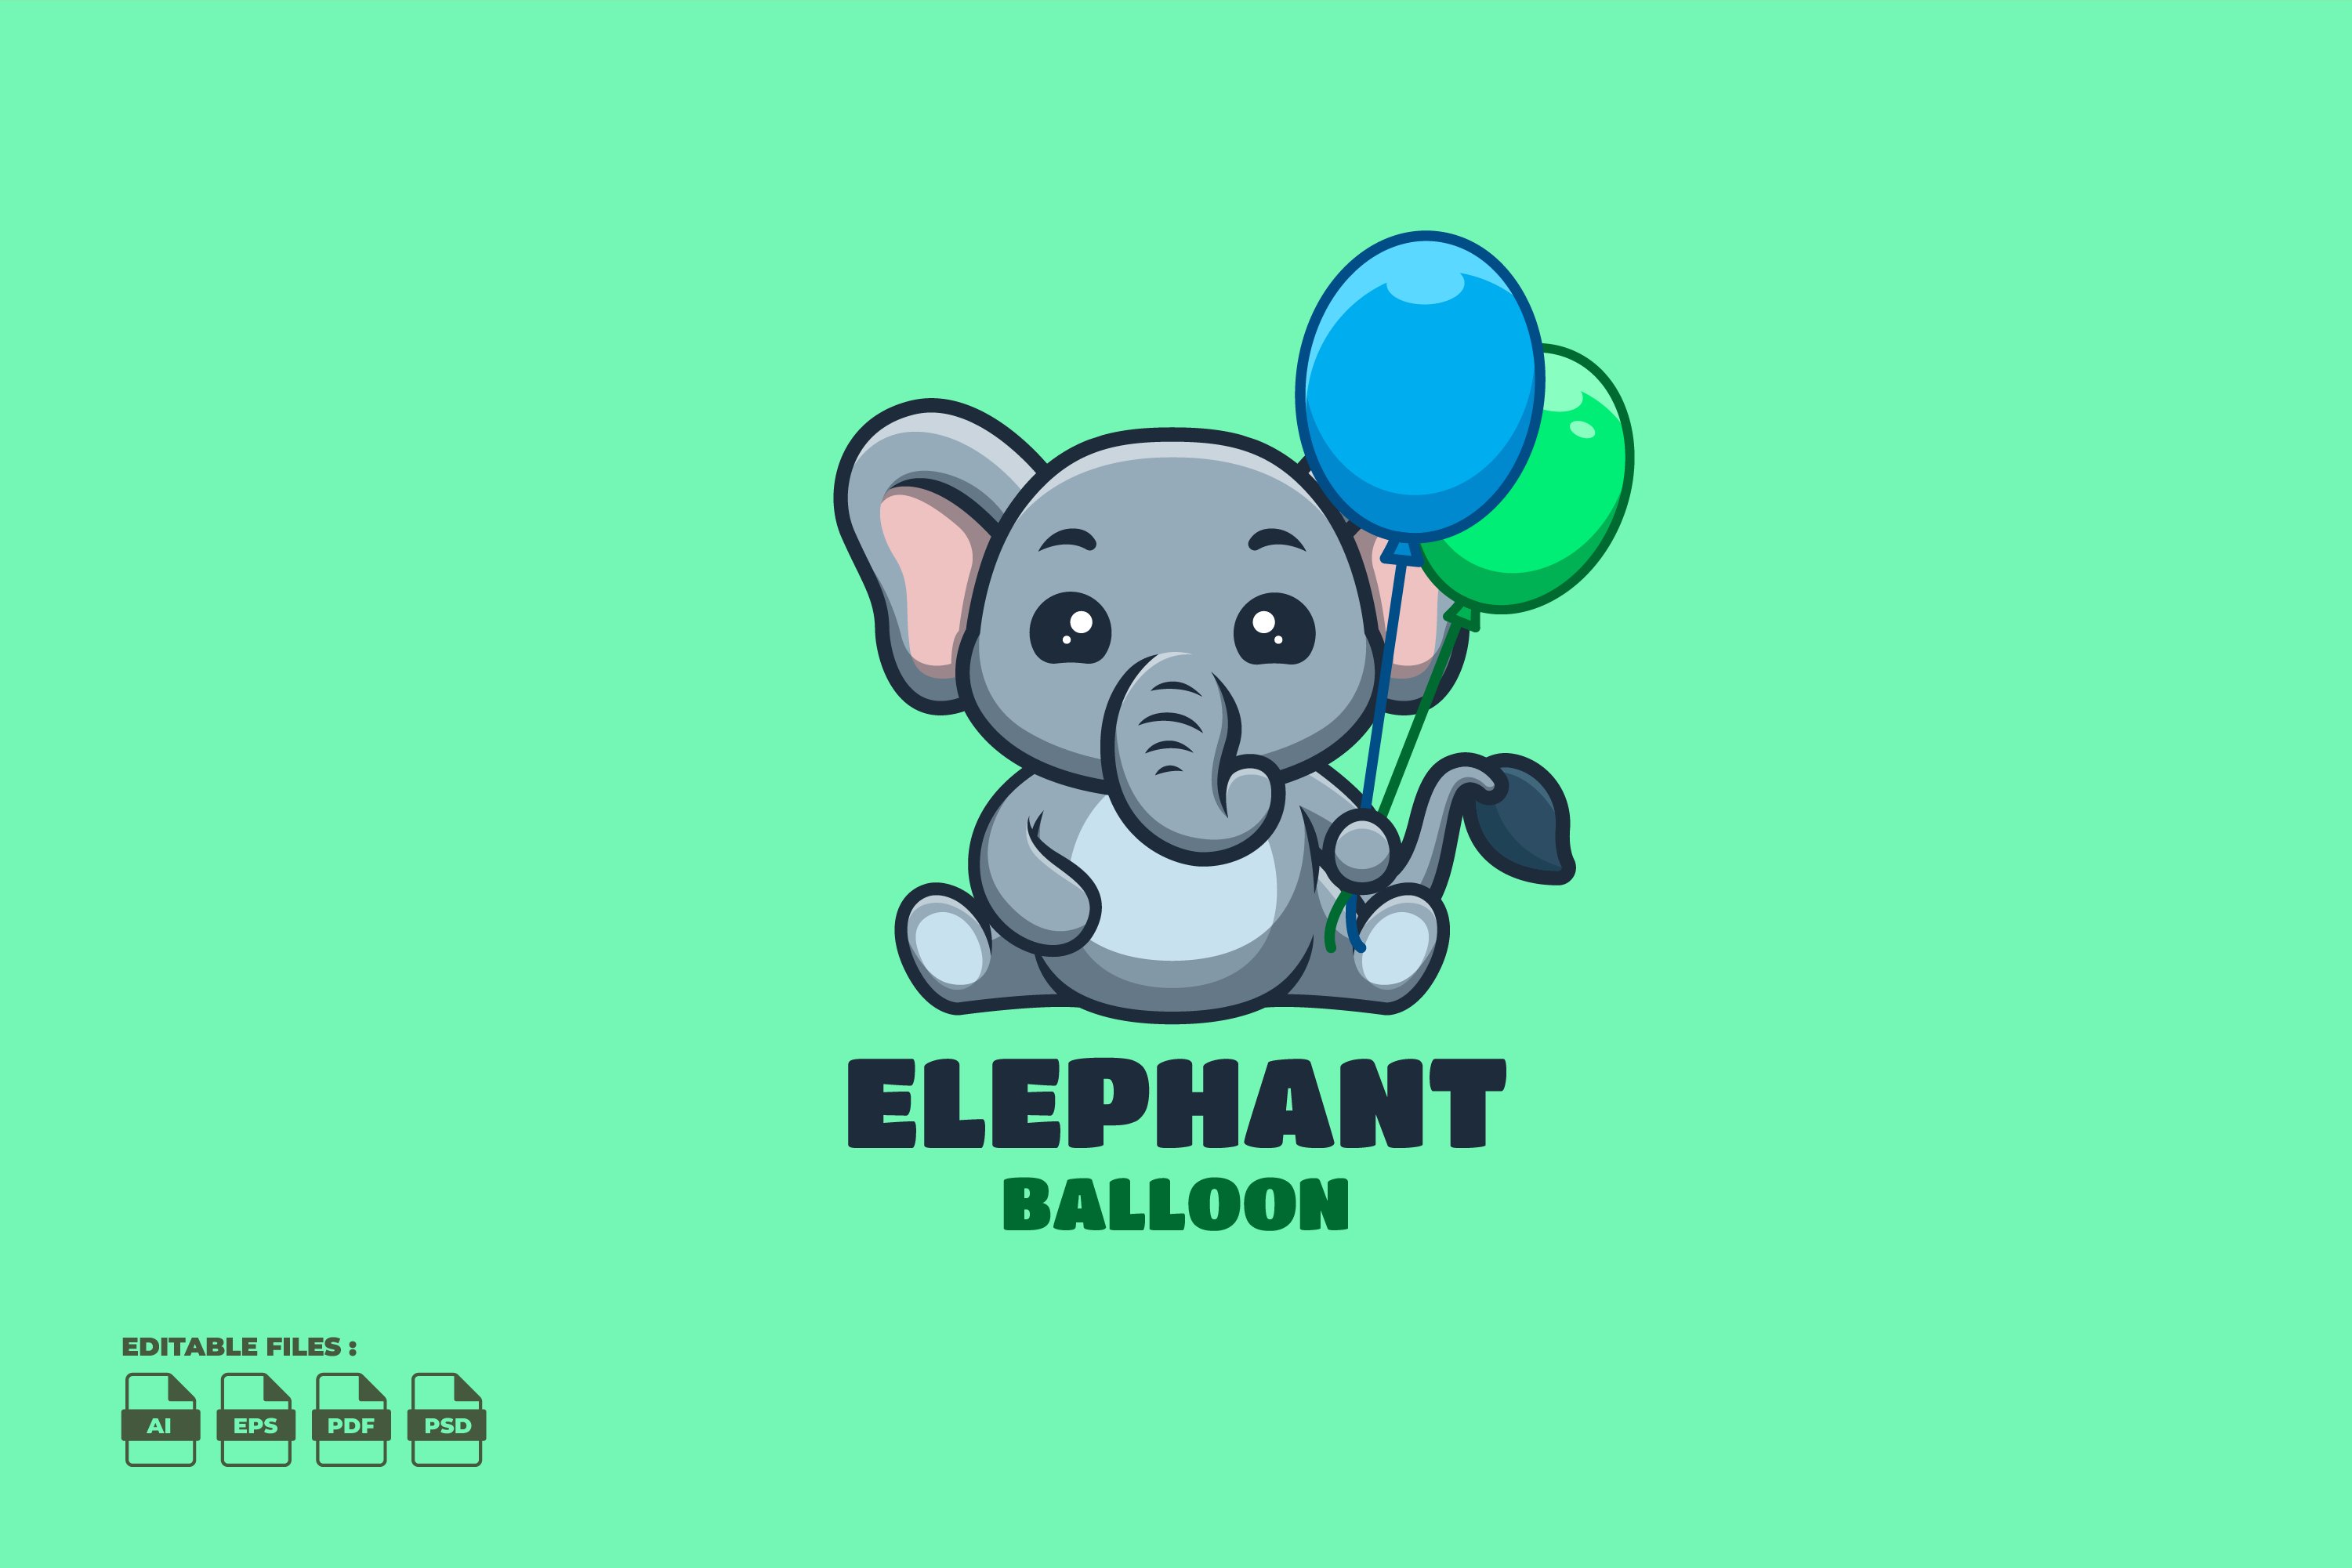 Balloon Elephant Cute Mascot Logo cover image.